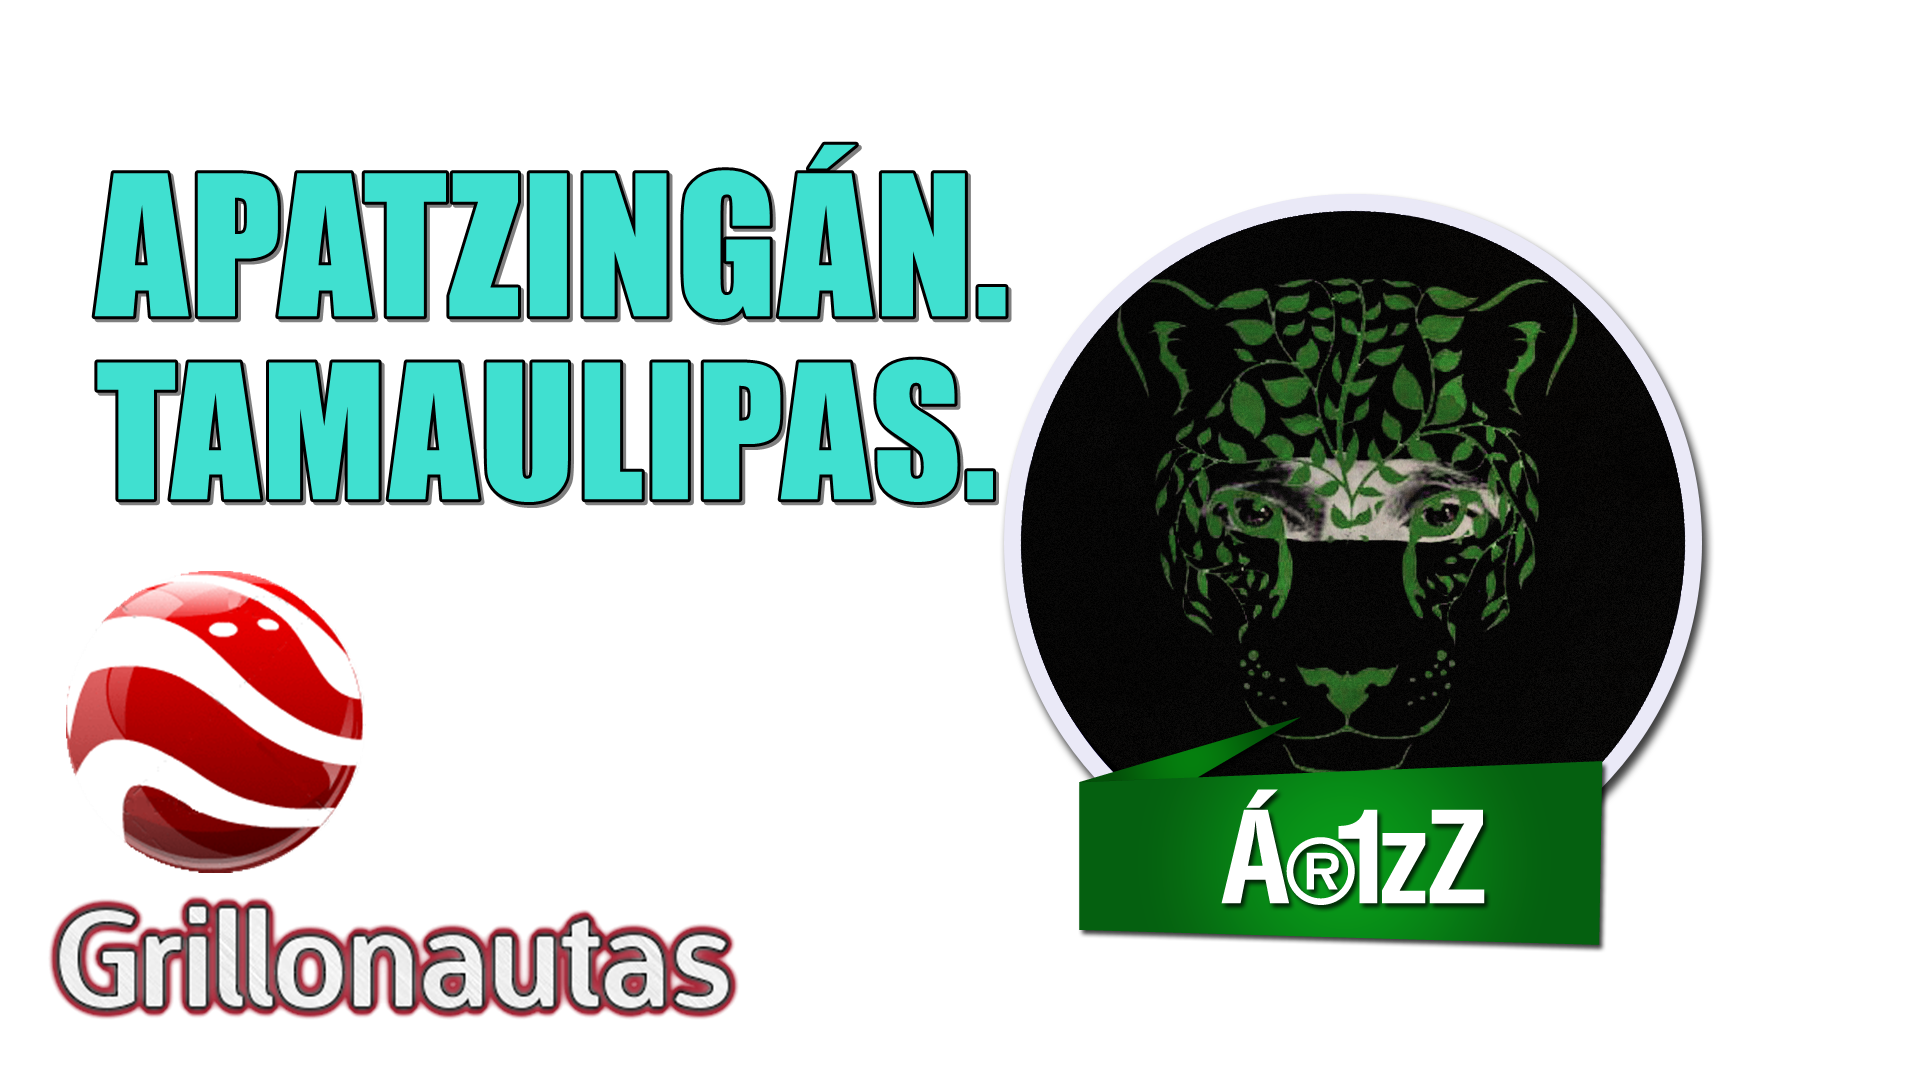 Apatzingán (algunos buscan venganza, no justicia). Tamaulipas, diez años de guerra.